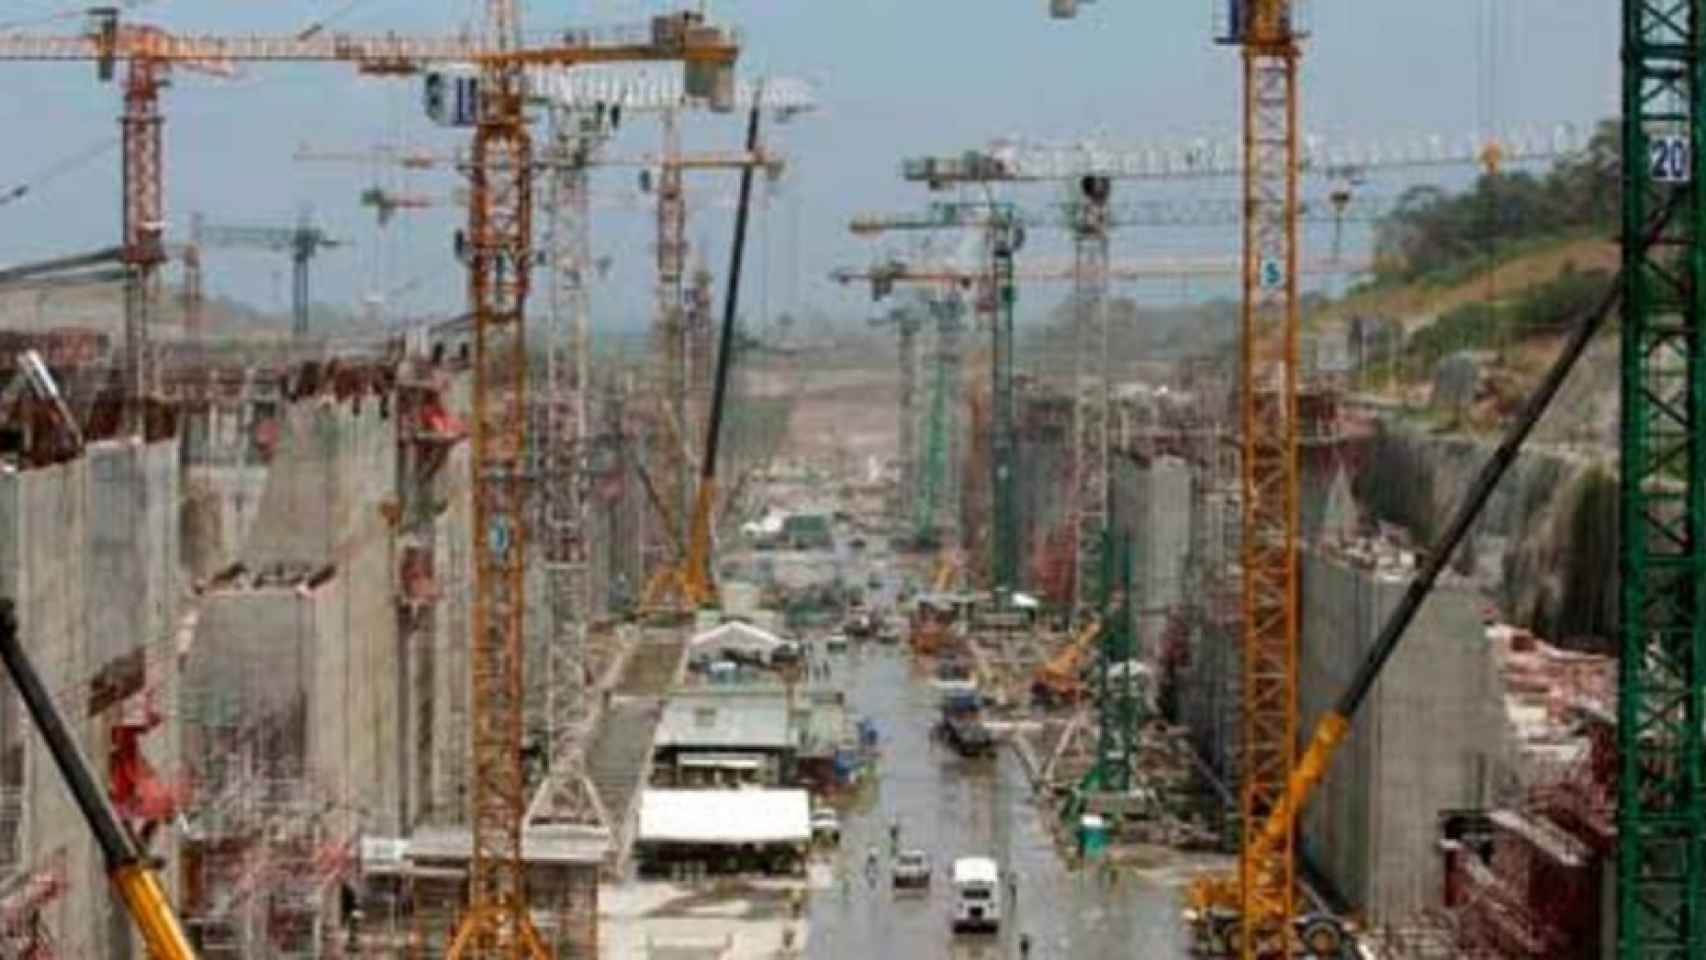 Canal de Panamá gana arbitraje y GUPC (Sacyr) deberá pagarle unos 23 millones dólares